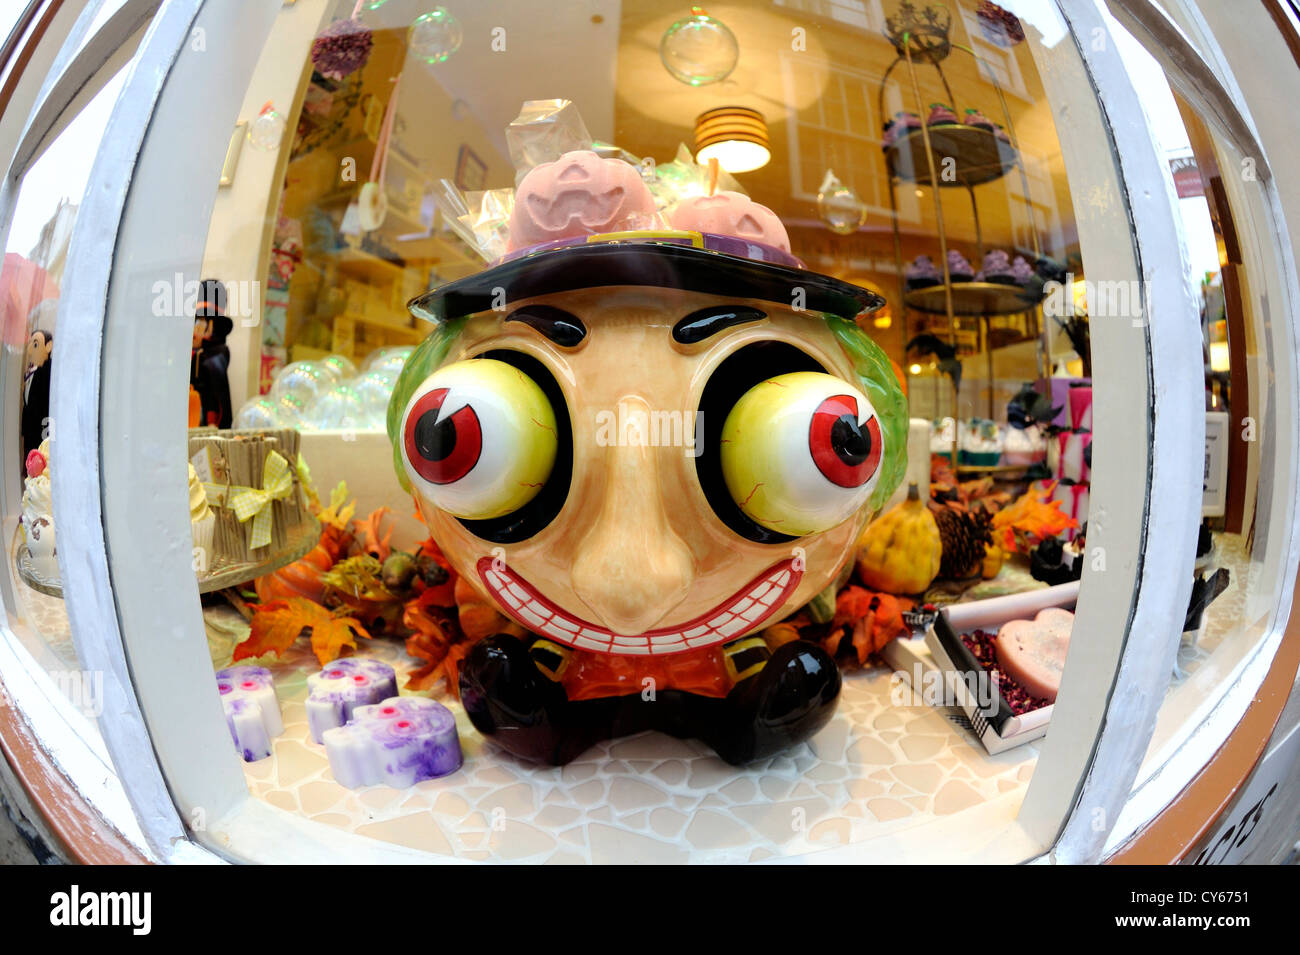 Vaso di Ceramica di una grande testa con grandi occhi sporgenti utilizzato nella vetrina di un negozio per la vendita di saponi profumati. Foto Stock